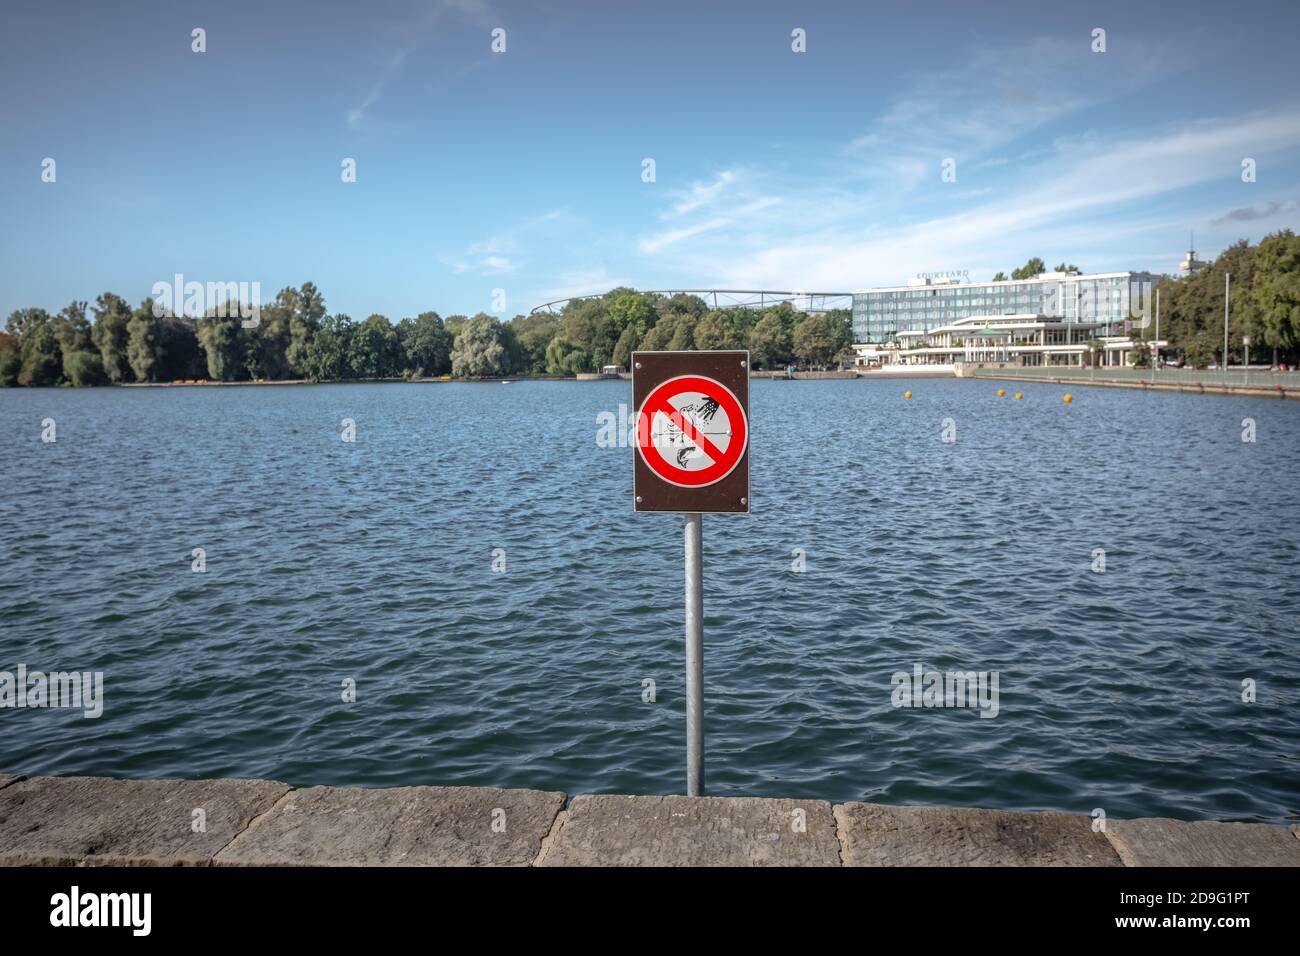 Pas de panneau d'alimentation de poissons ou de canards sur le lac Maschsee à Hanovre, en Allemagne Banque D'Images